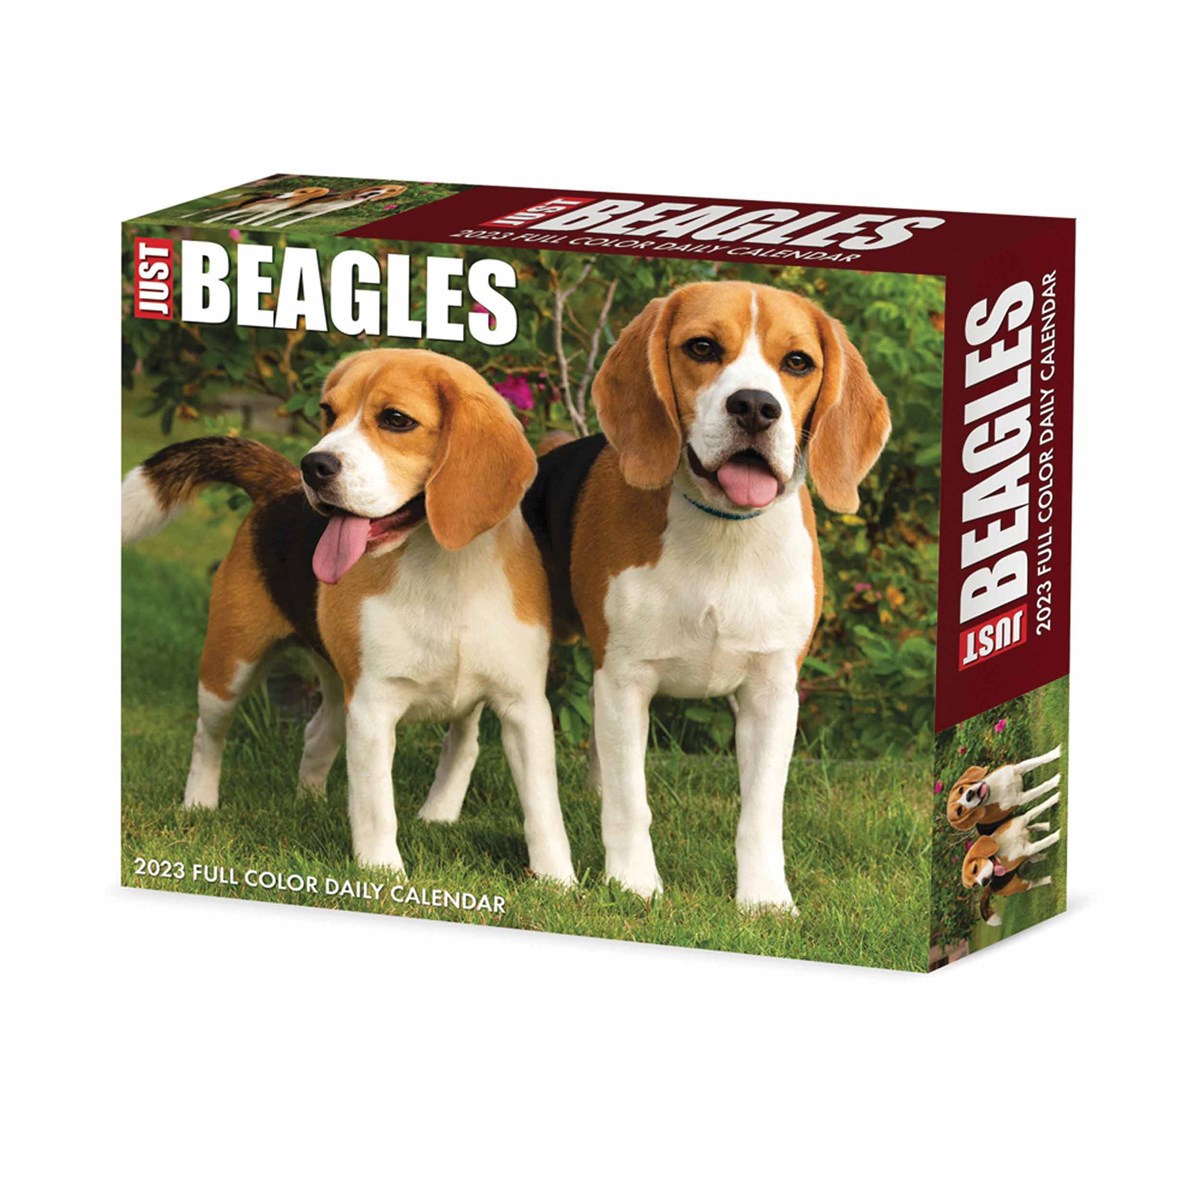 Just Beagles Desk 2023 Calendars